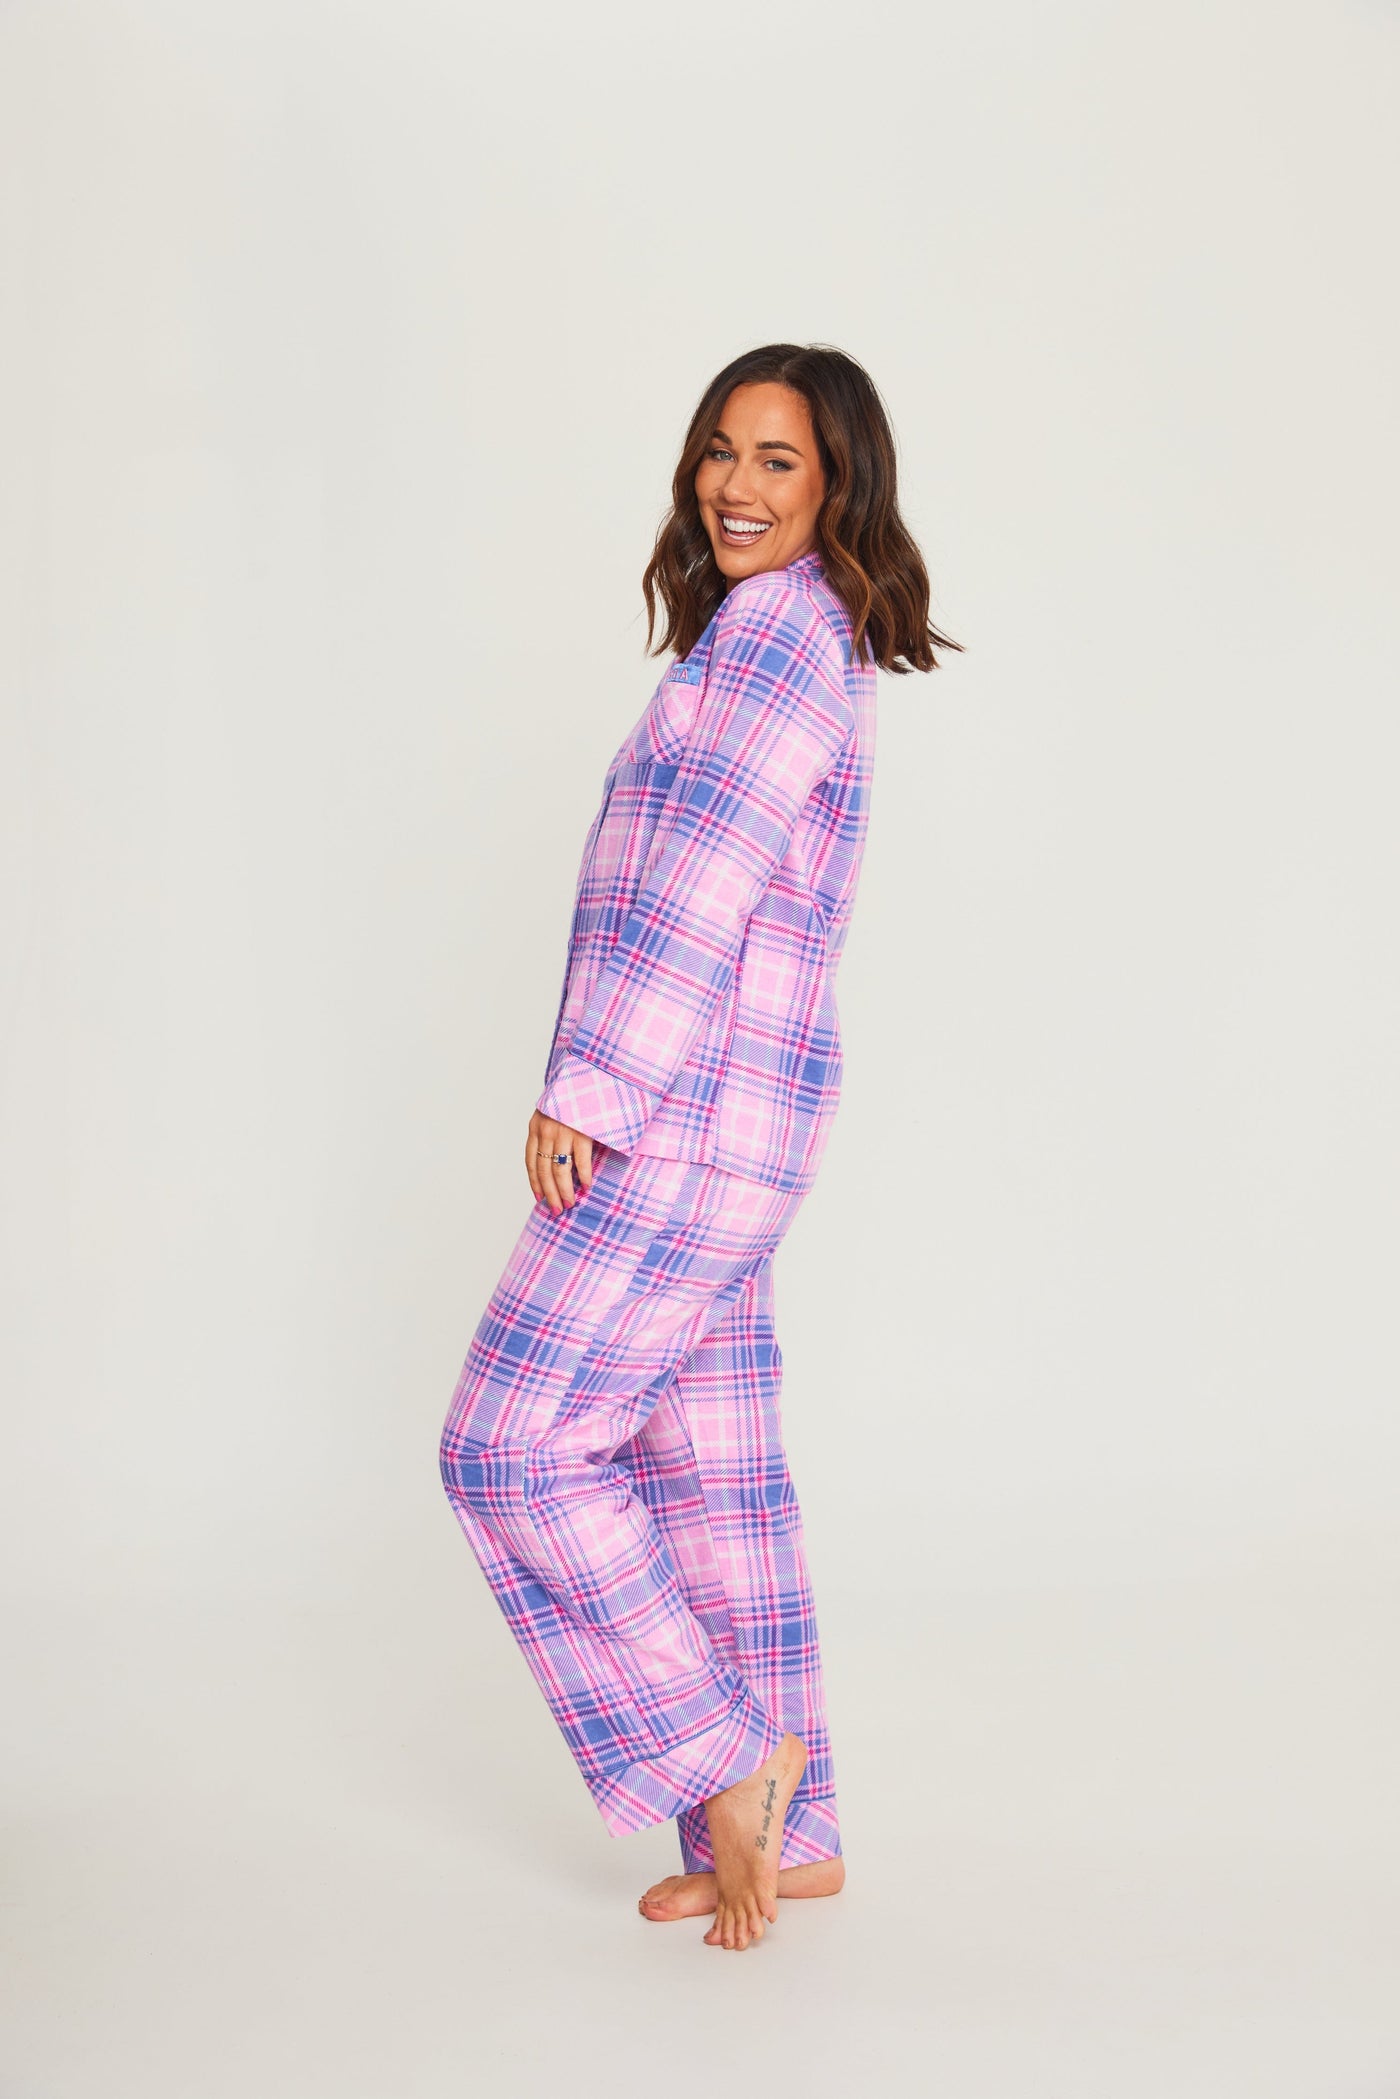 Cachia Maeve Bundle Pajamas